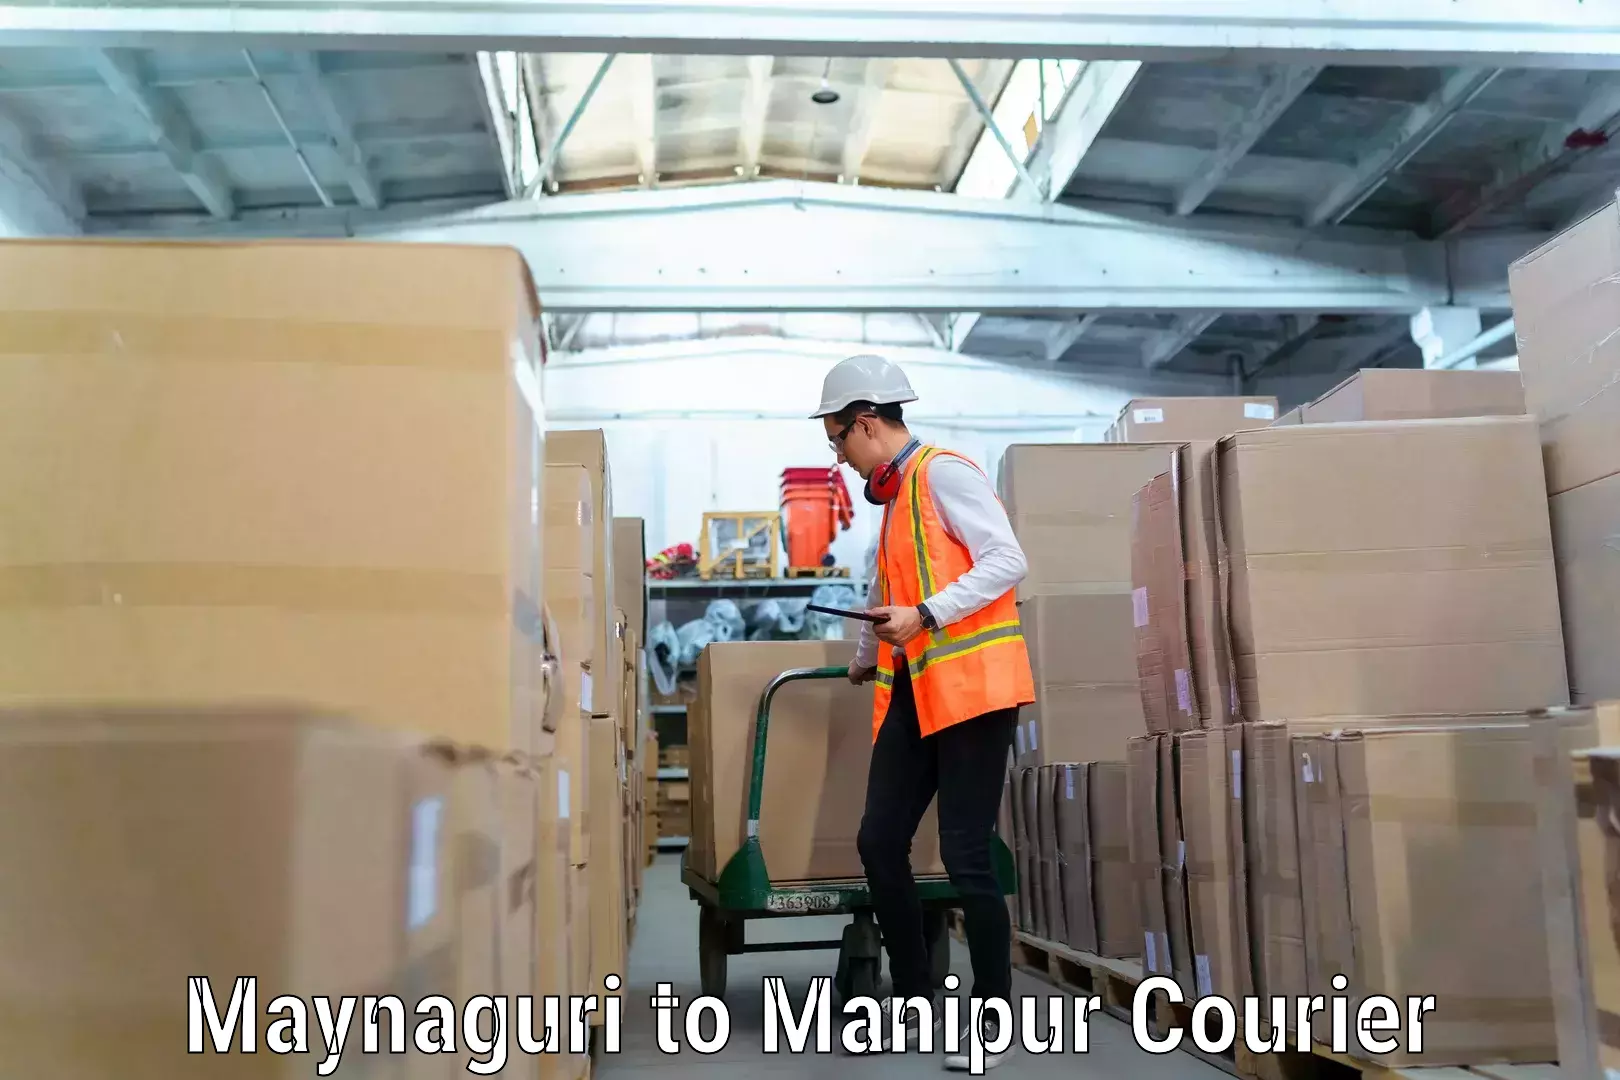 Furniture moving service Maynaguri to Manipur